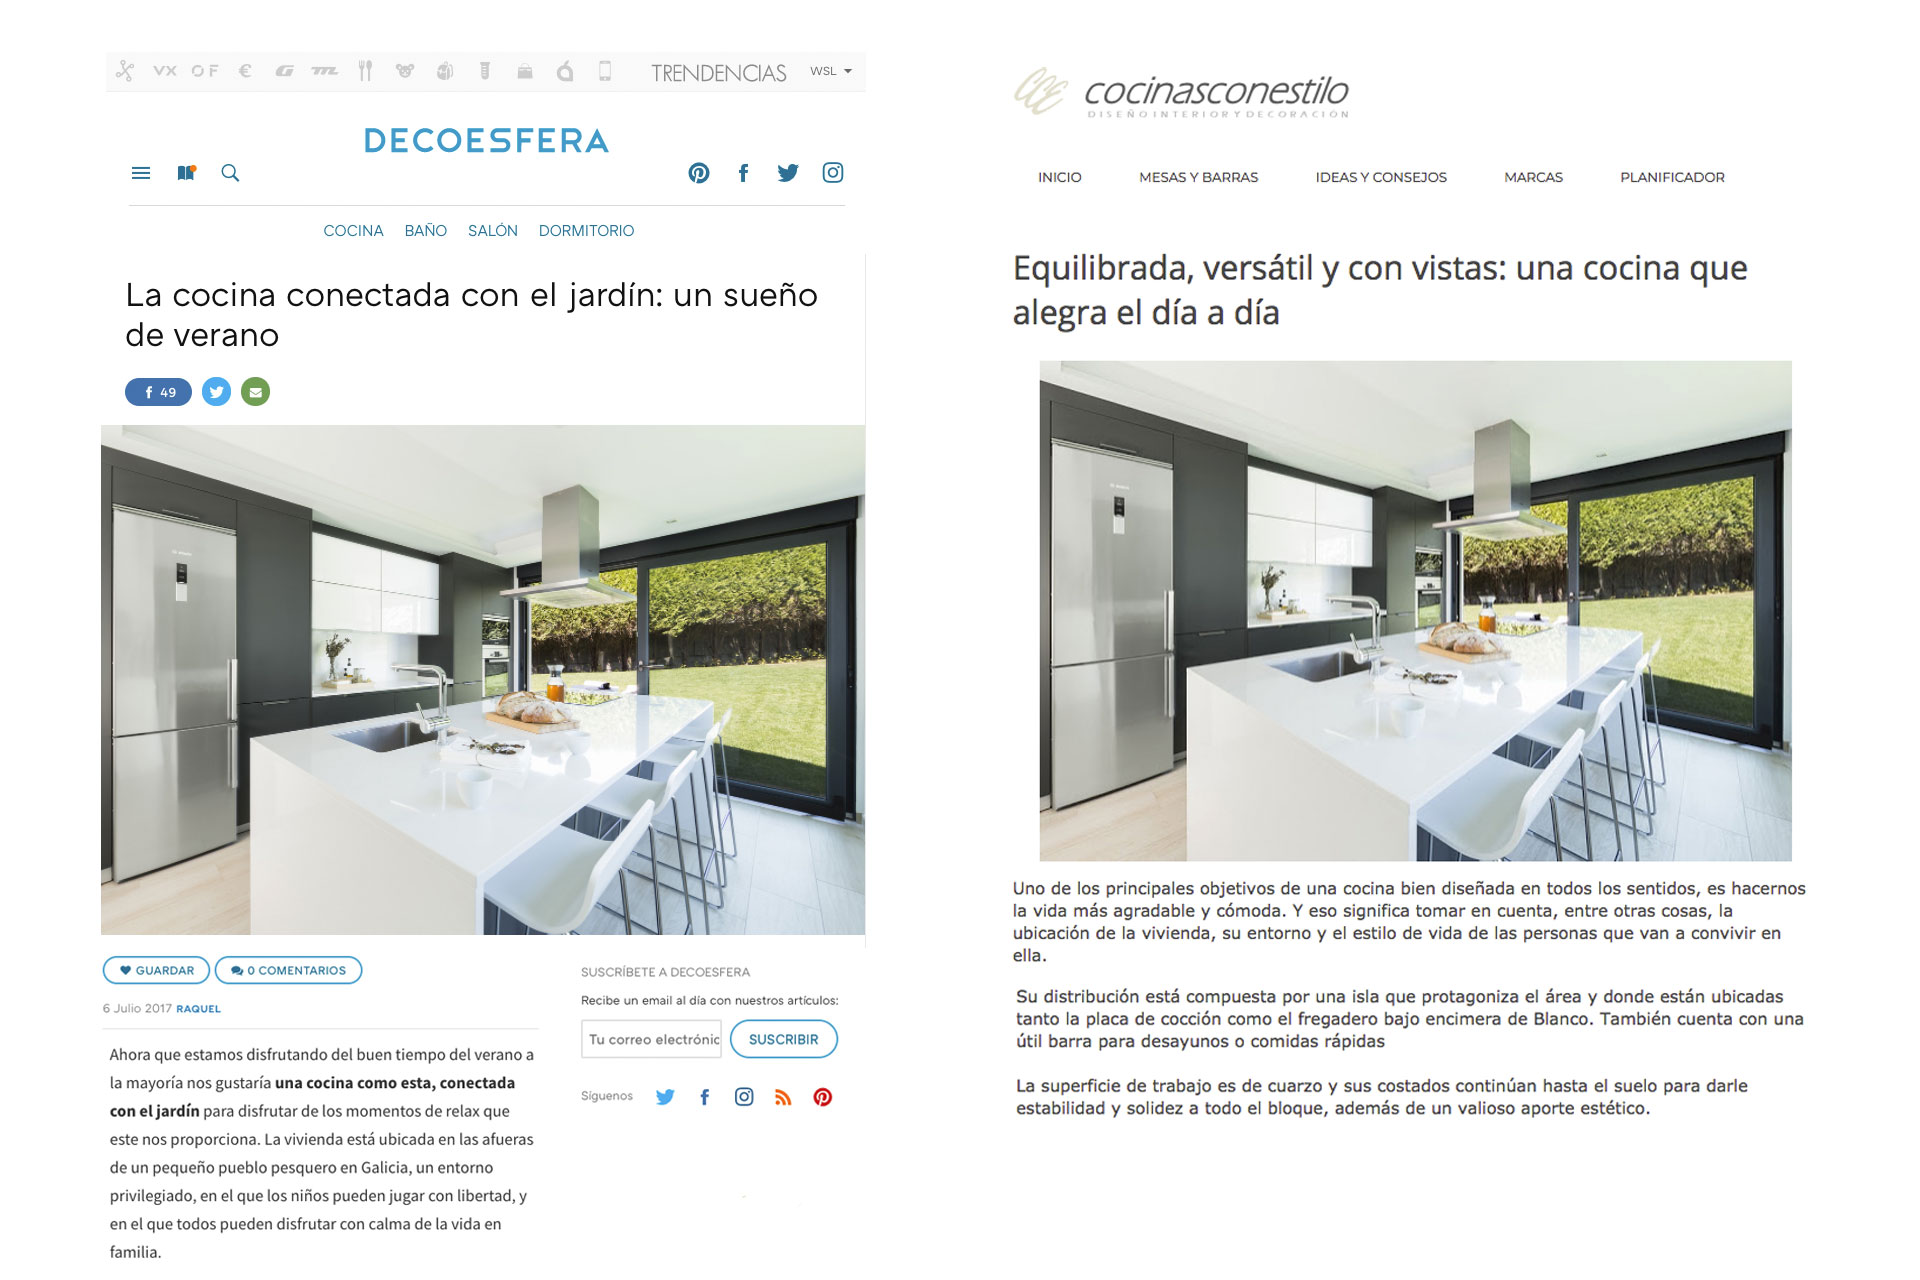 Santiago Interiores en los medios: una cocina con vistas | Cocinas Santos | Santiago Interiores